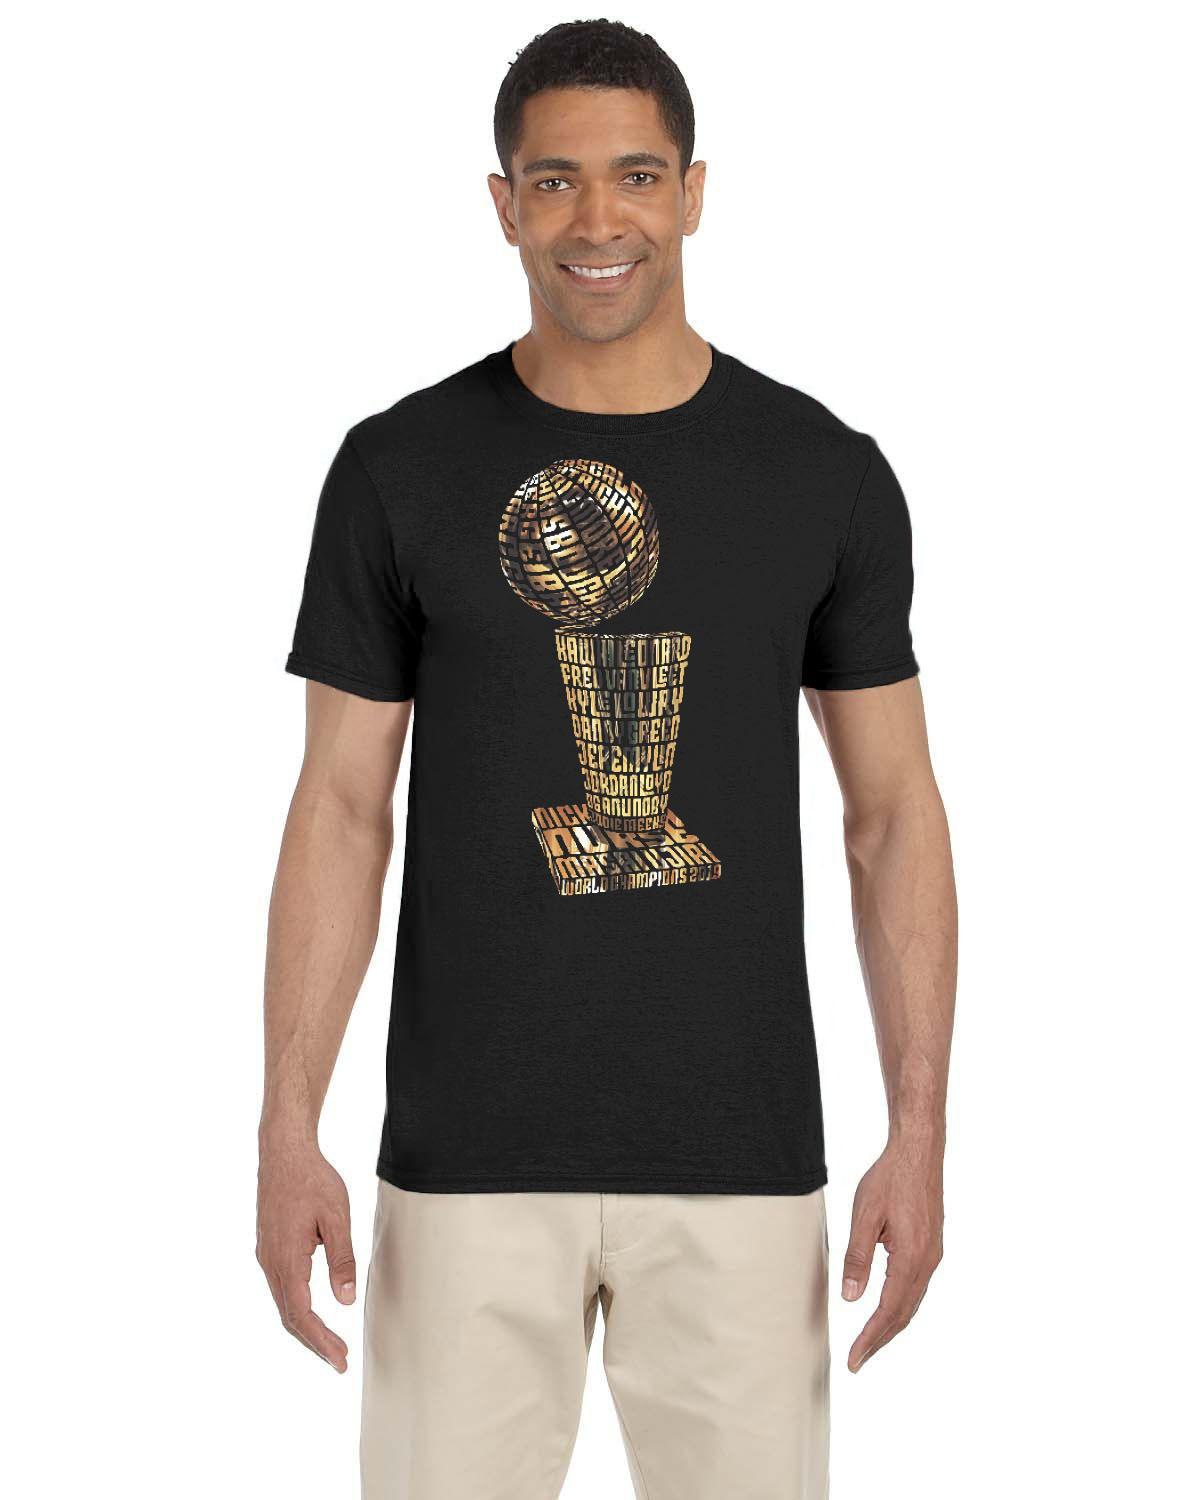 NBA Typographic Print Crew-Neck T-shirt